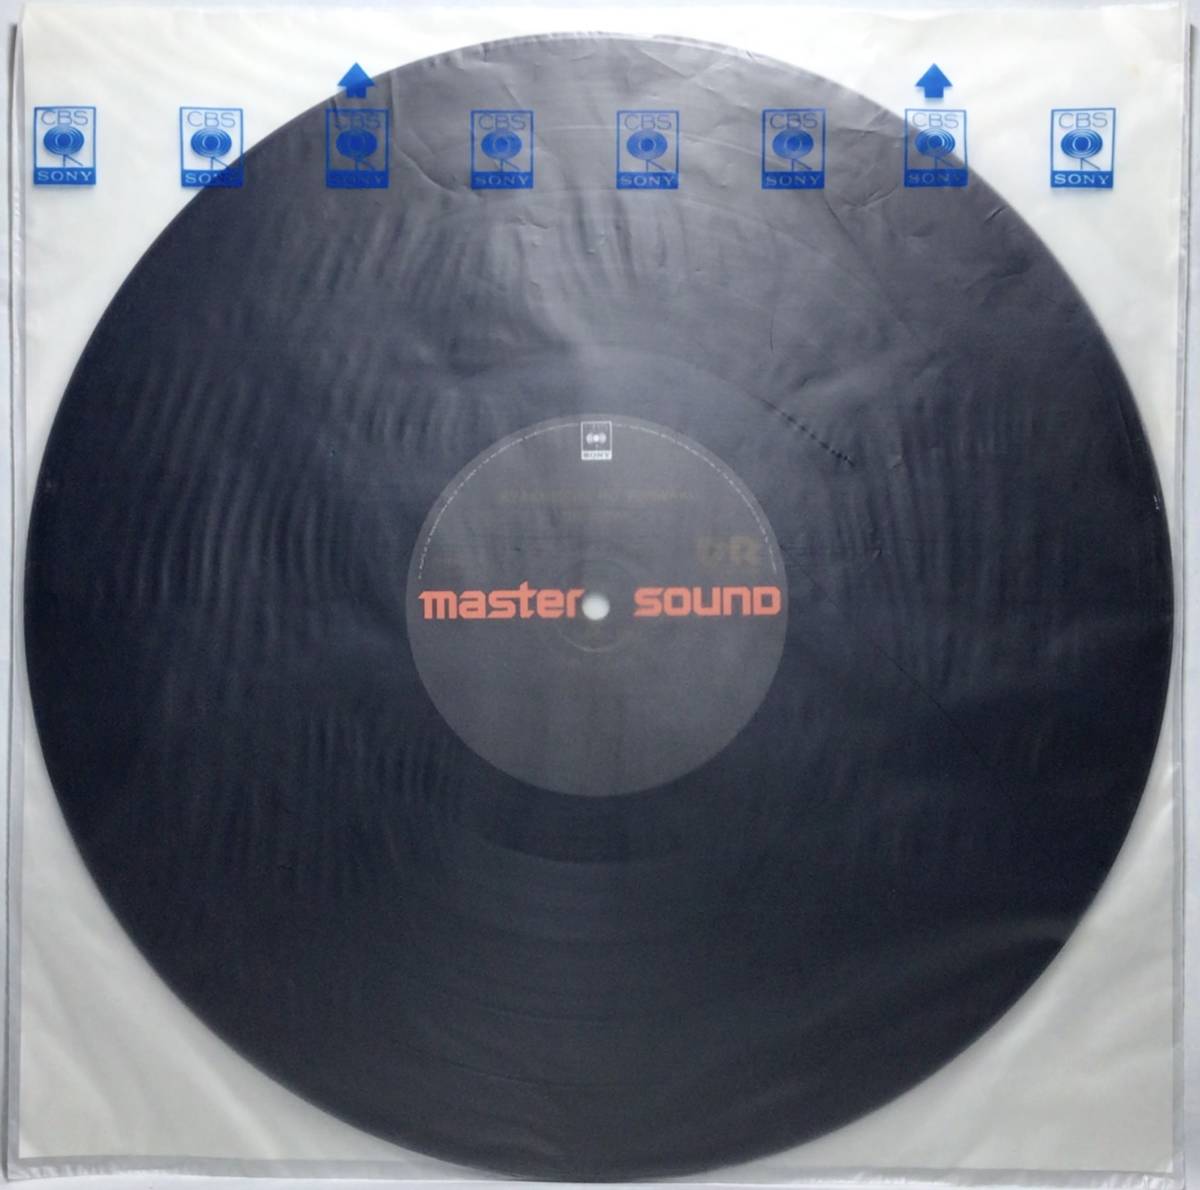 【日LP帯 MASTER SOUND】 ザ・スクエア THE SQUARE 脚線美の誘惑 / 1982 日本盤 LPレコード マスターサウンド 高音質盤 試聴済_画像5